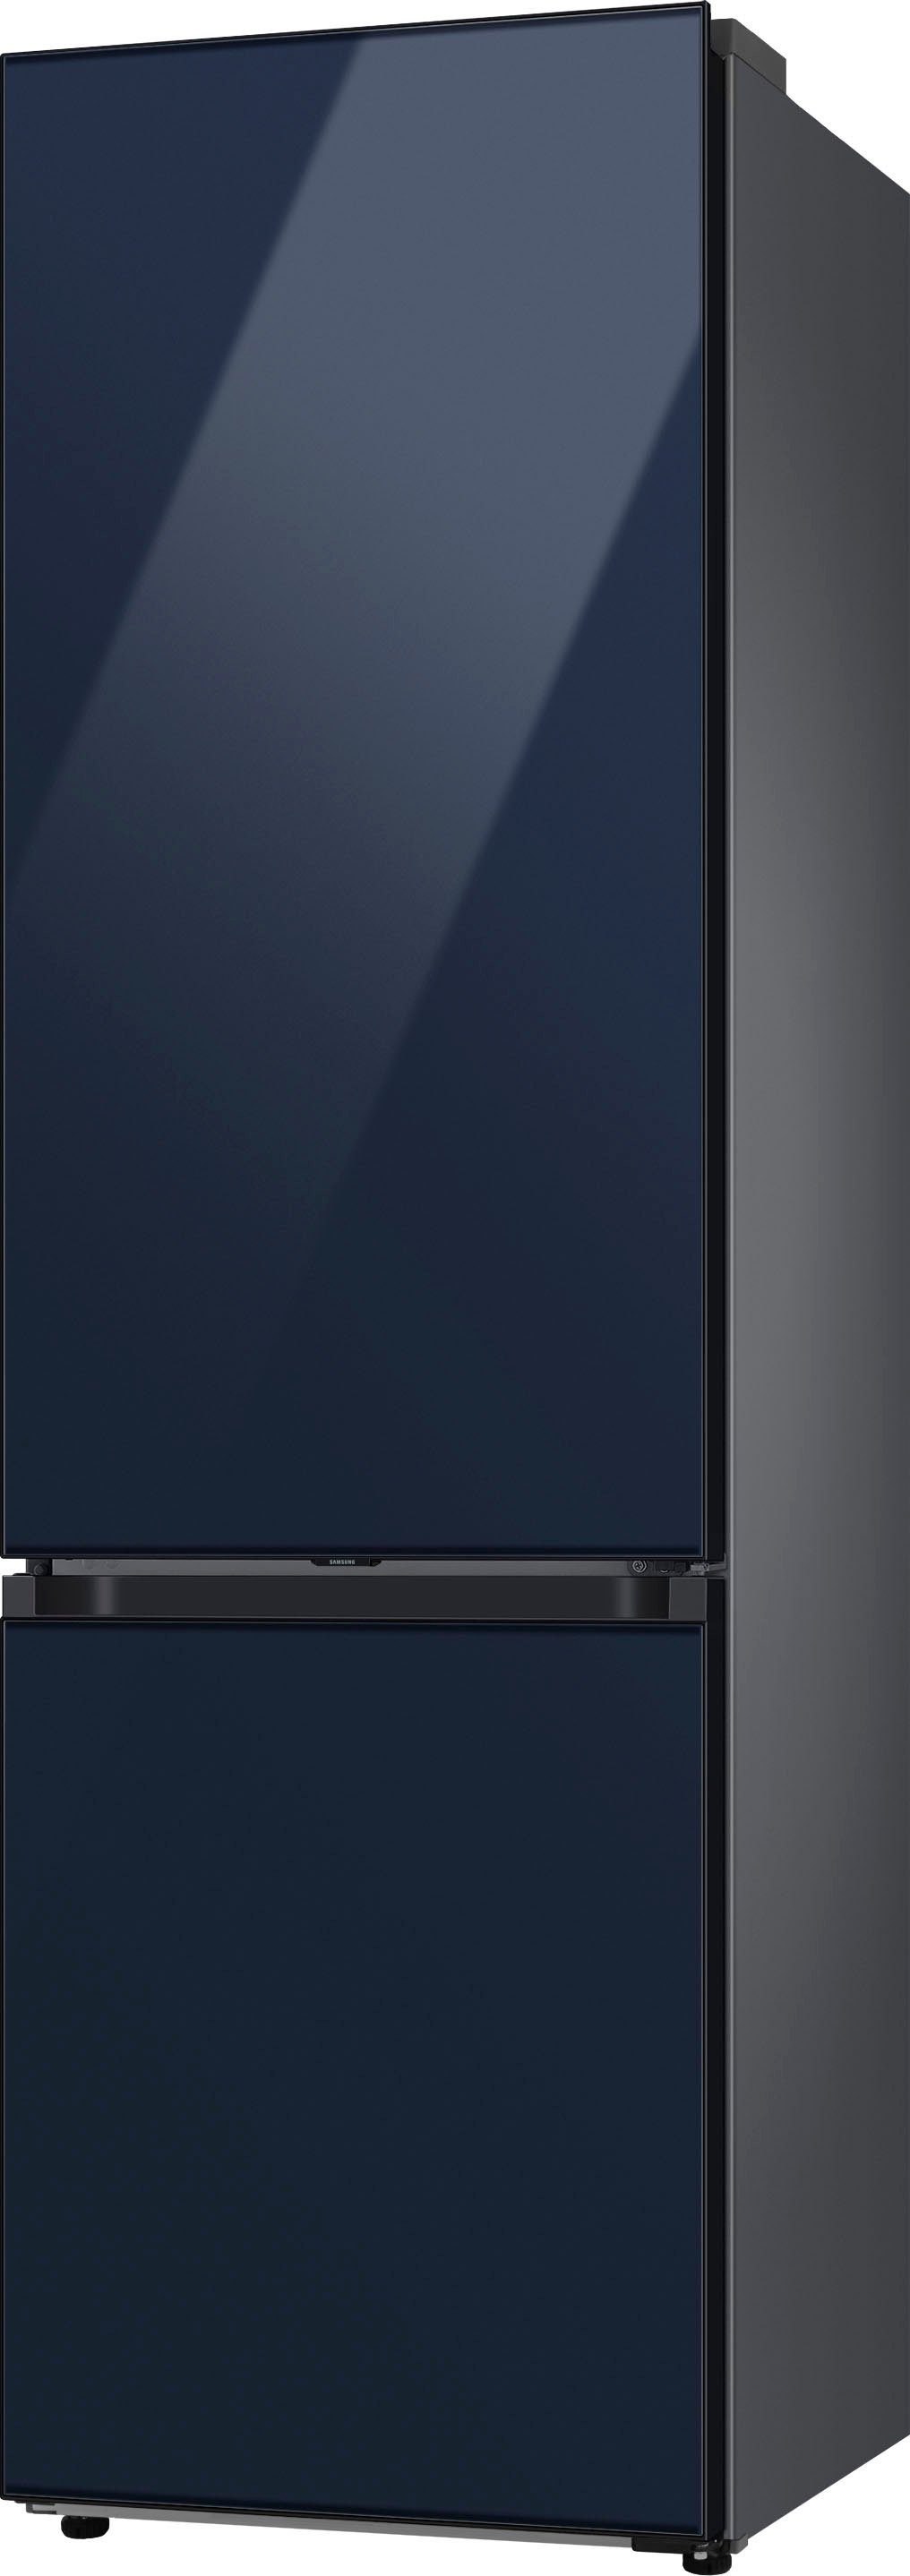 hoch, Samsung 59,5 Kühl-/Gefrierkombination RL38C6B6C41, 203 cm cm breit